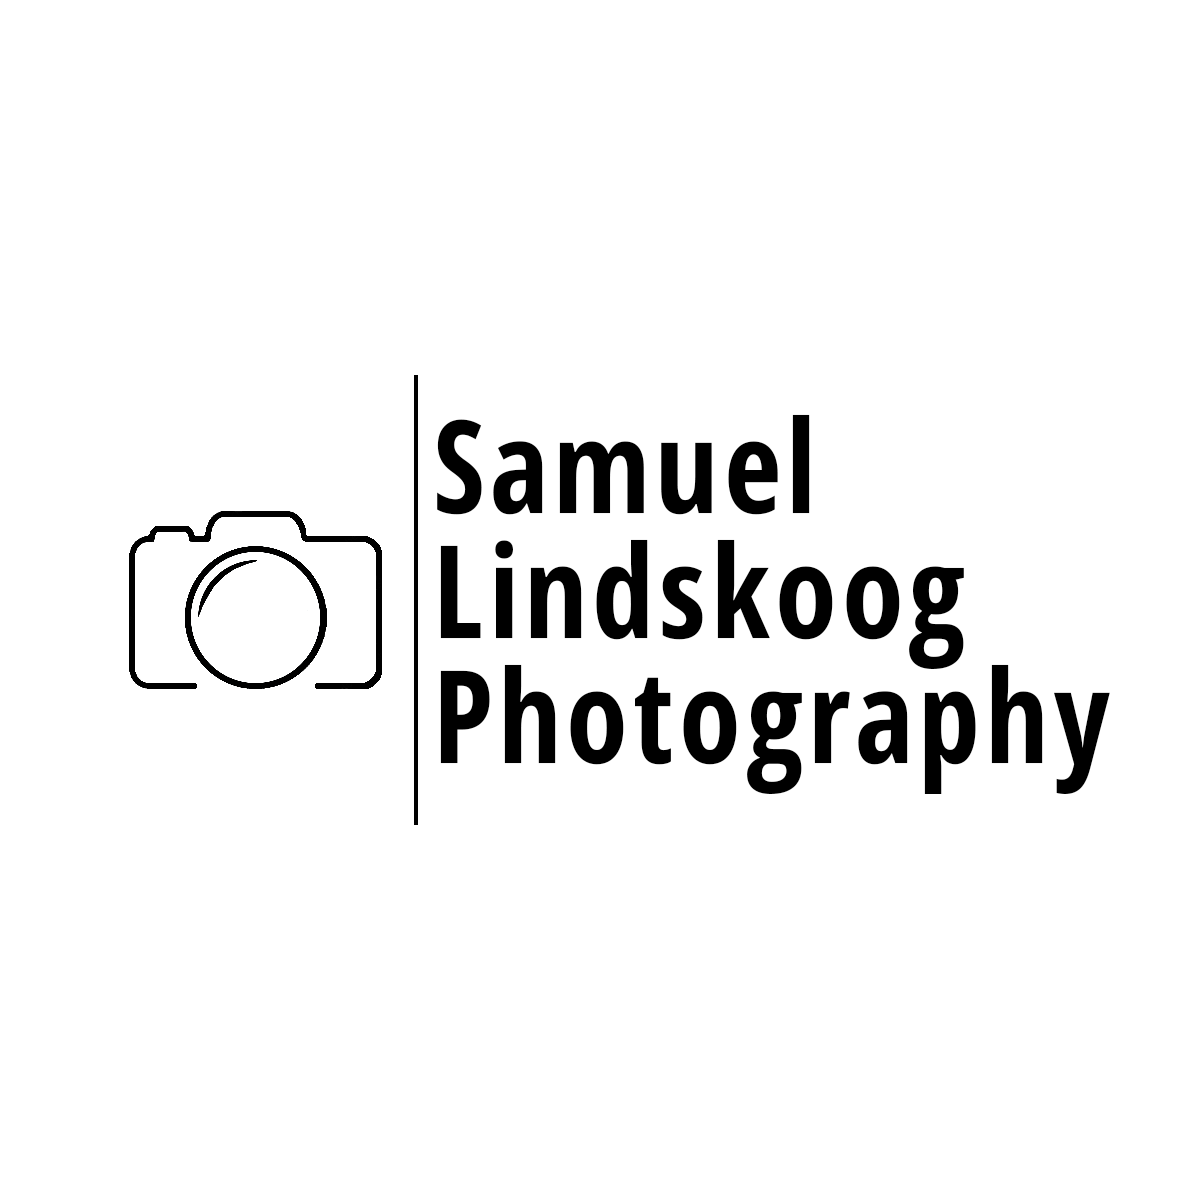 Samuel Lindskoog Photography